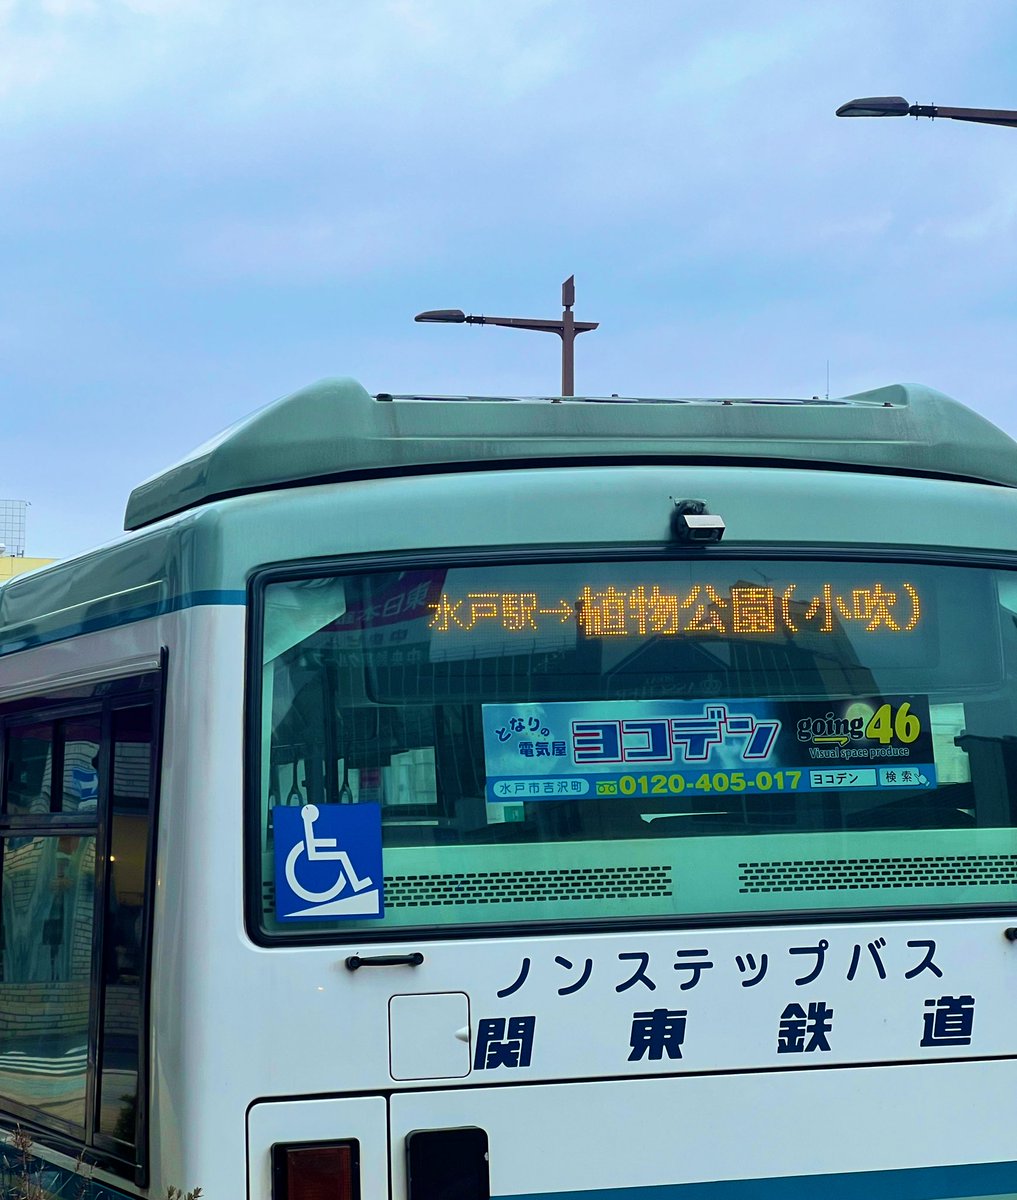 あ！関東鉄道@kantetsu_info さんのバスだぁ！#水戸市植物公園　行きの貴重な貴重な貴重な公共交通です。お世話になっております！